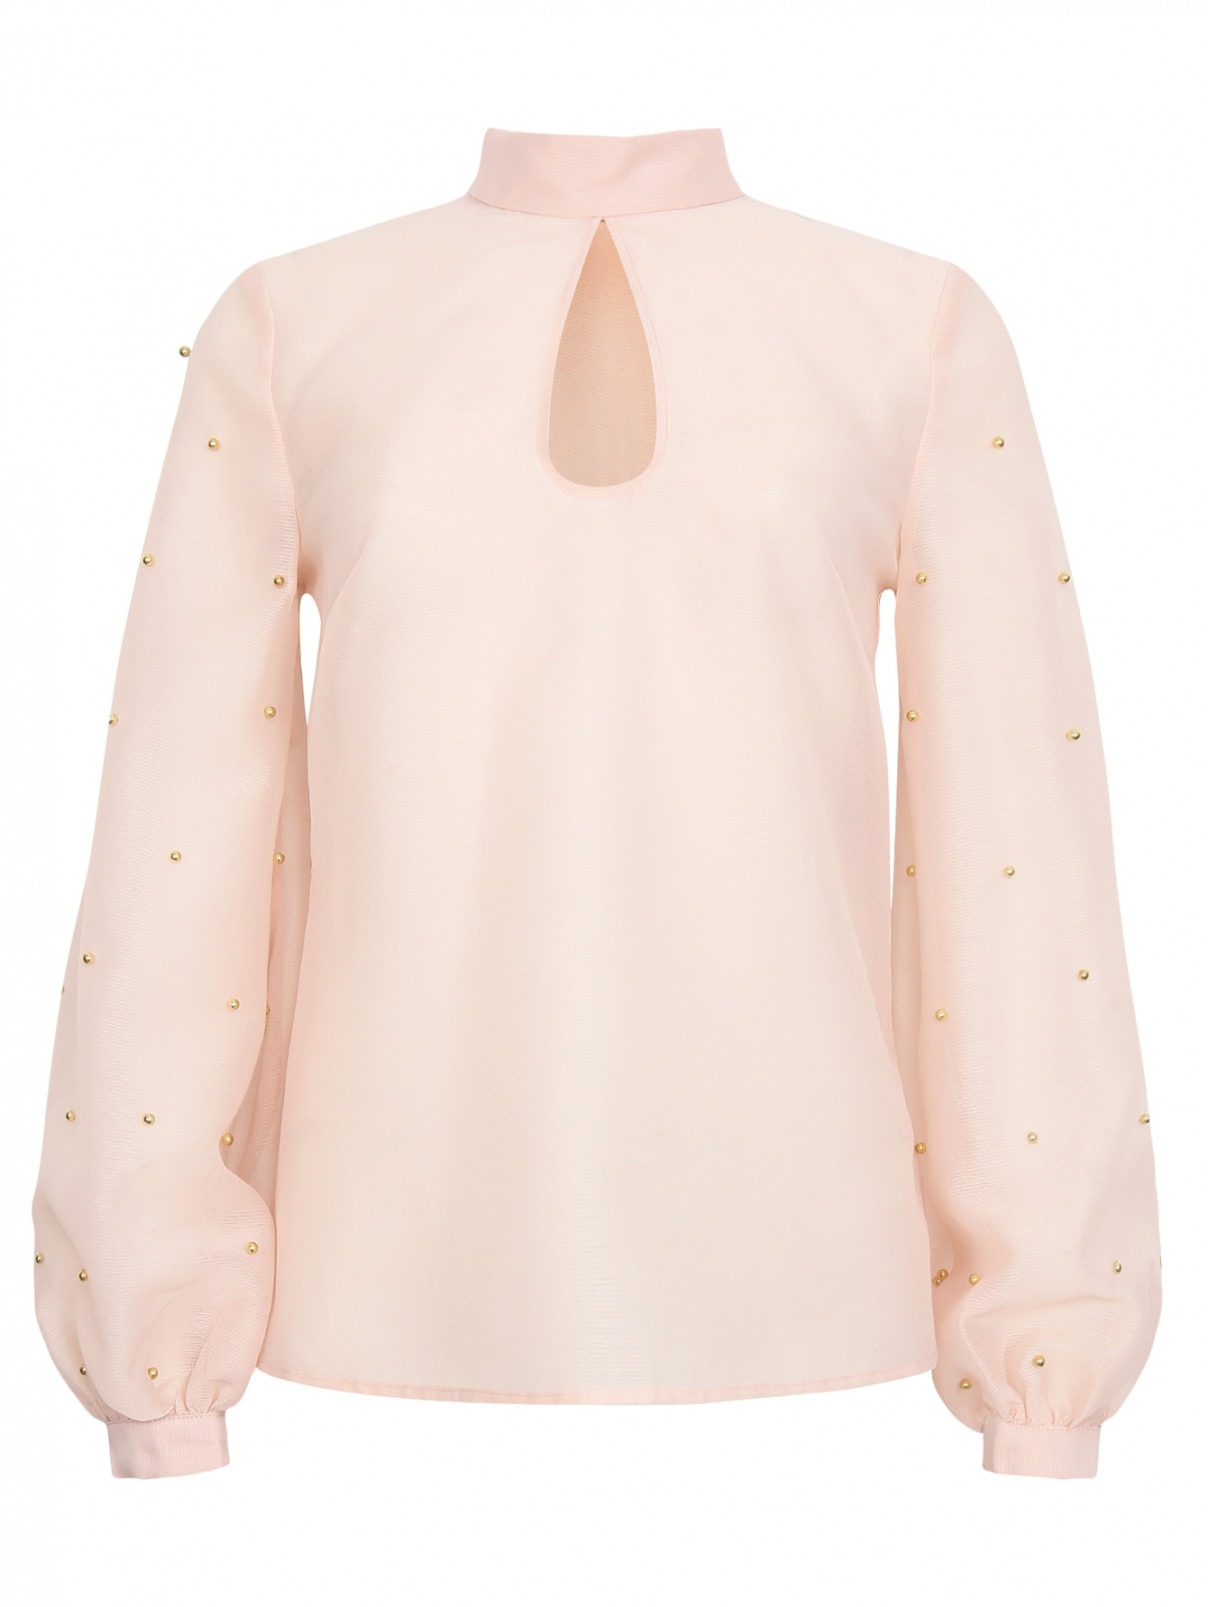 Блуза из полупрозрачной ткани с отделкой бусинами Keepsake  –  Общий вид  – Цвет:  Розовый